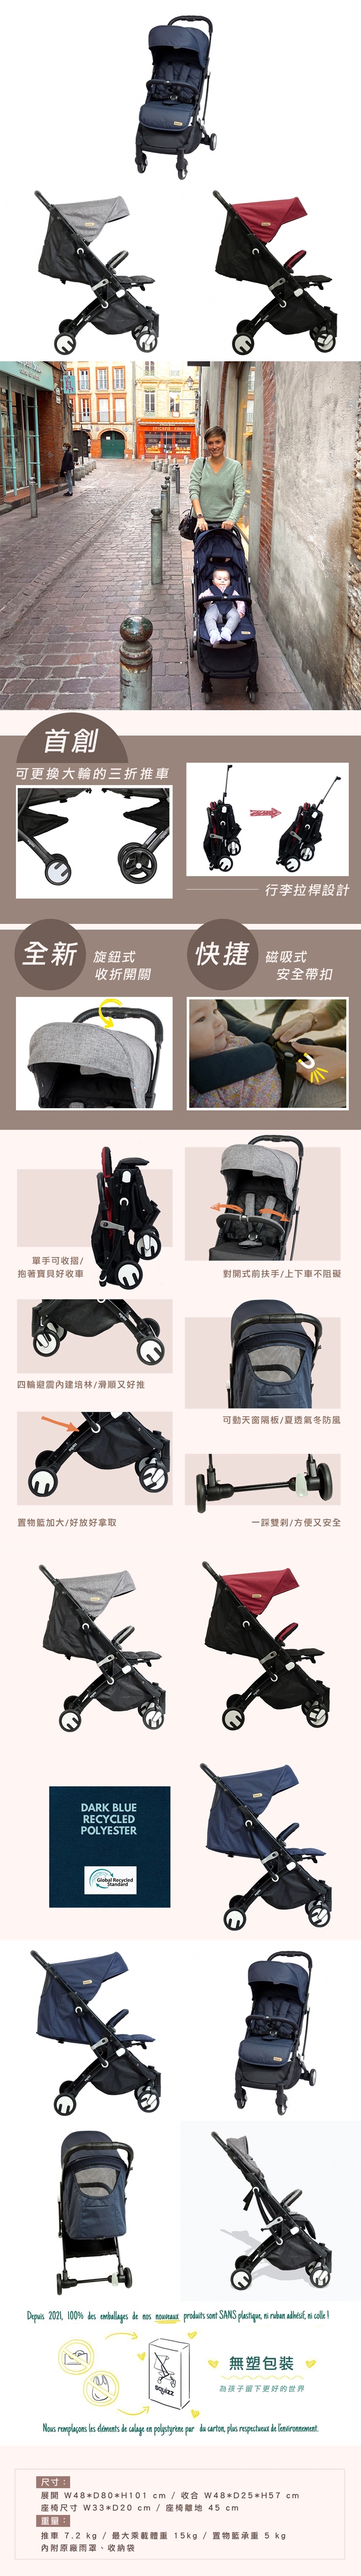 凱溢-Looping Squizz3+輕巧行李式嬰兒推車-SUV大輪升級版(景泰藍/極度灰/熱情紅)